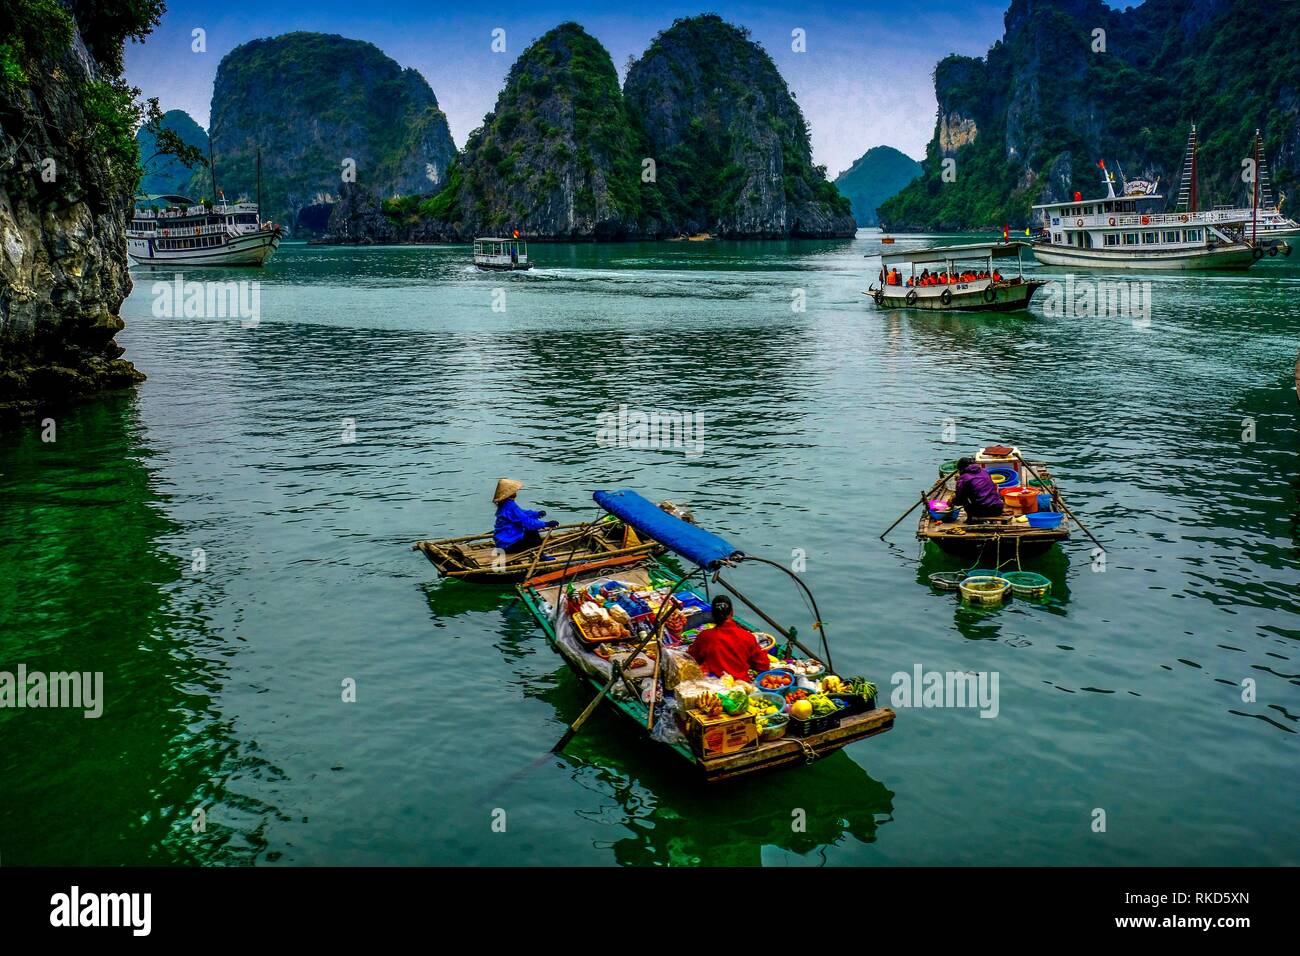 Il Vietnam, la baia di Ha Long è un sito Patrimonio Mondiale dell'UNESCO e meta turistica apprezzata in Quang Ninh Provincia, Vietnam. Dal punto di vista amministrativo, la baia Foto Stock